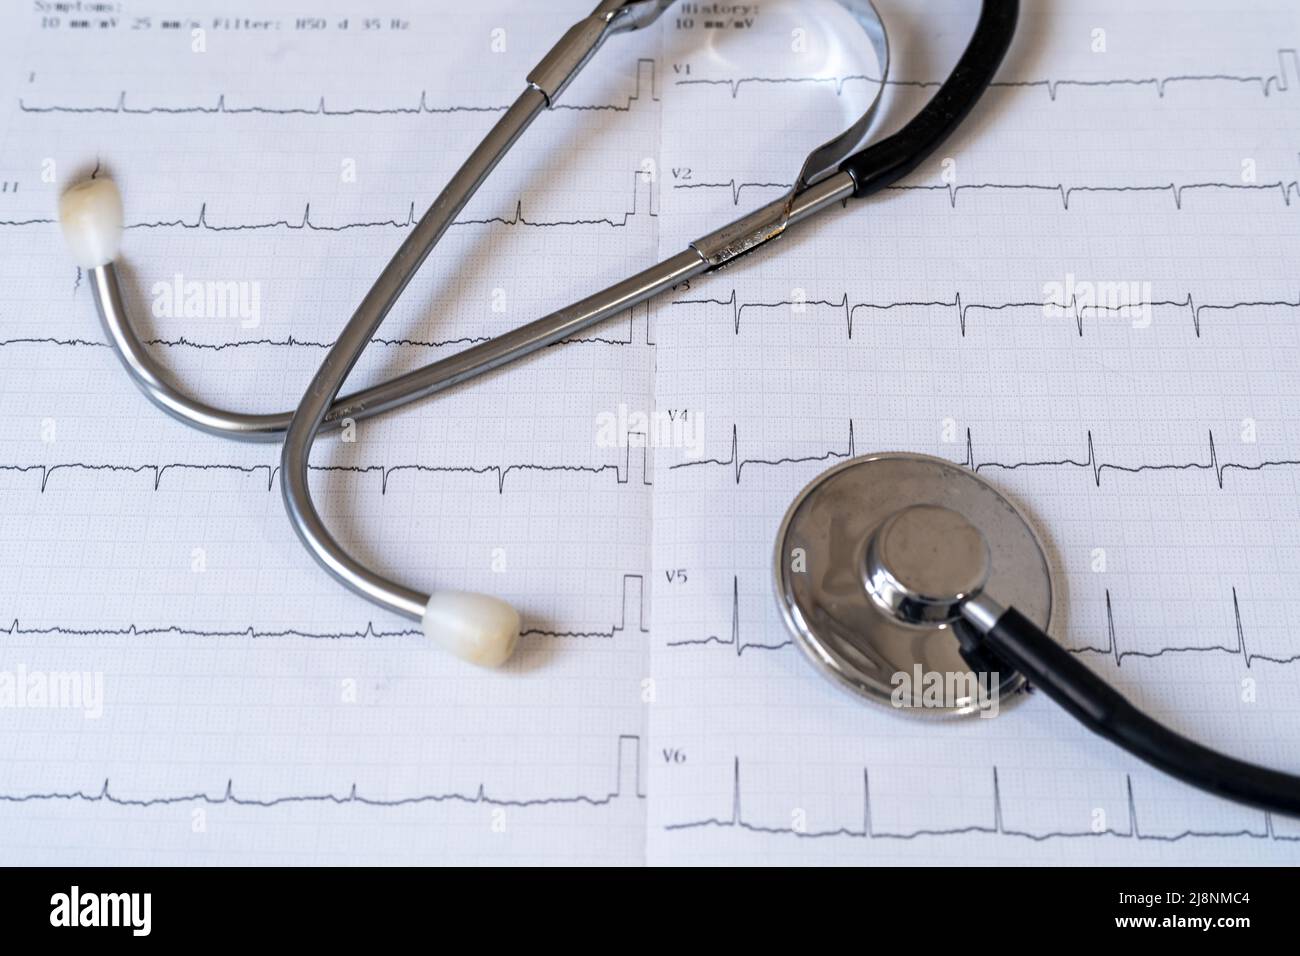 Gros plan du stéthoscope et du papier de résultats de test ecg. Concept de santé cardiaque et de contrôle cardio. Banque D'Images